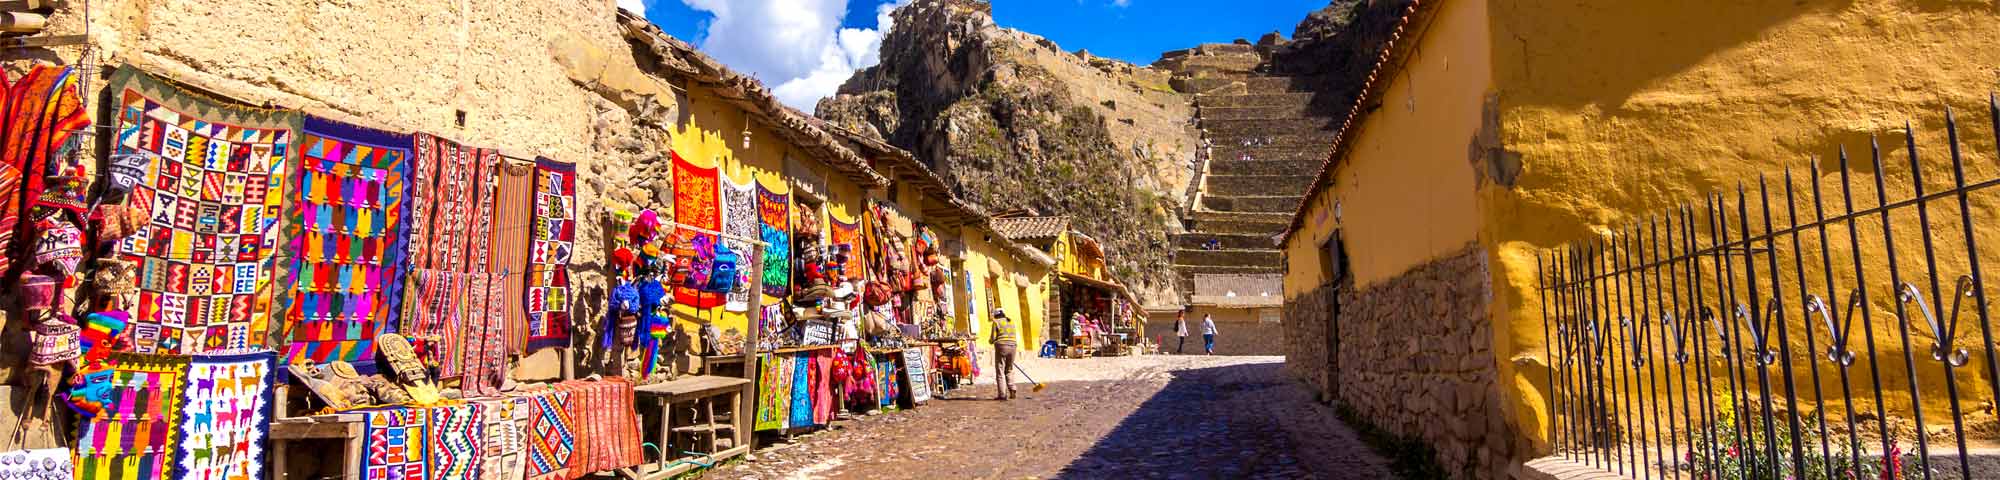 Ollantaytambo es reconocido por el MINCETUR como el primer “Pueblo con encanto” de Perú